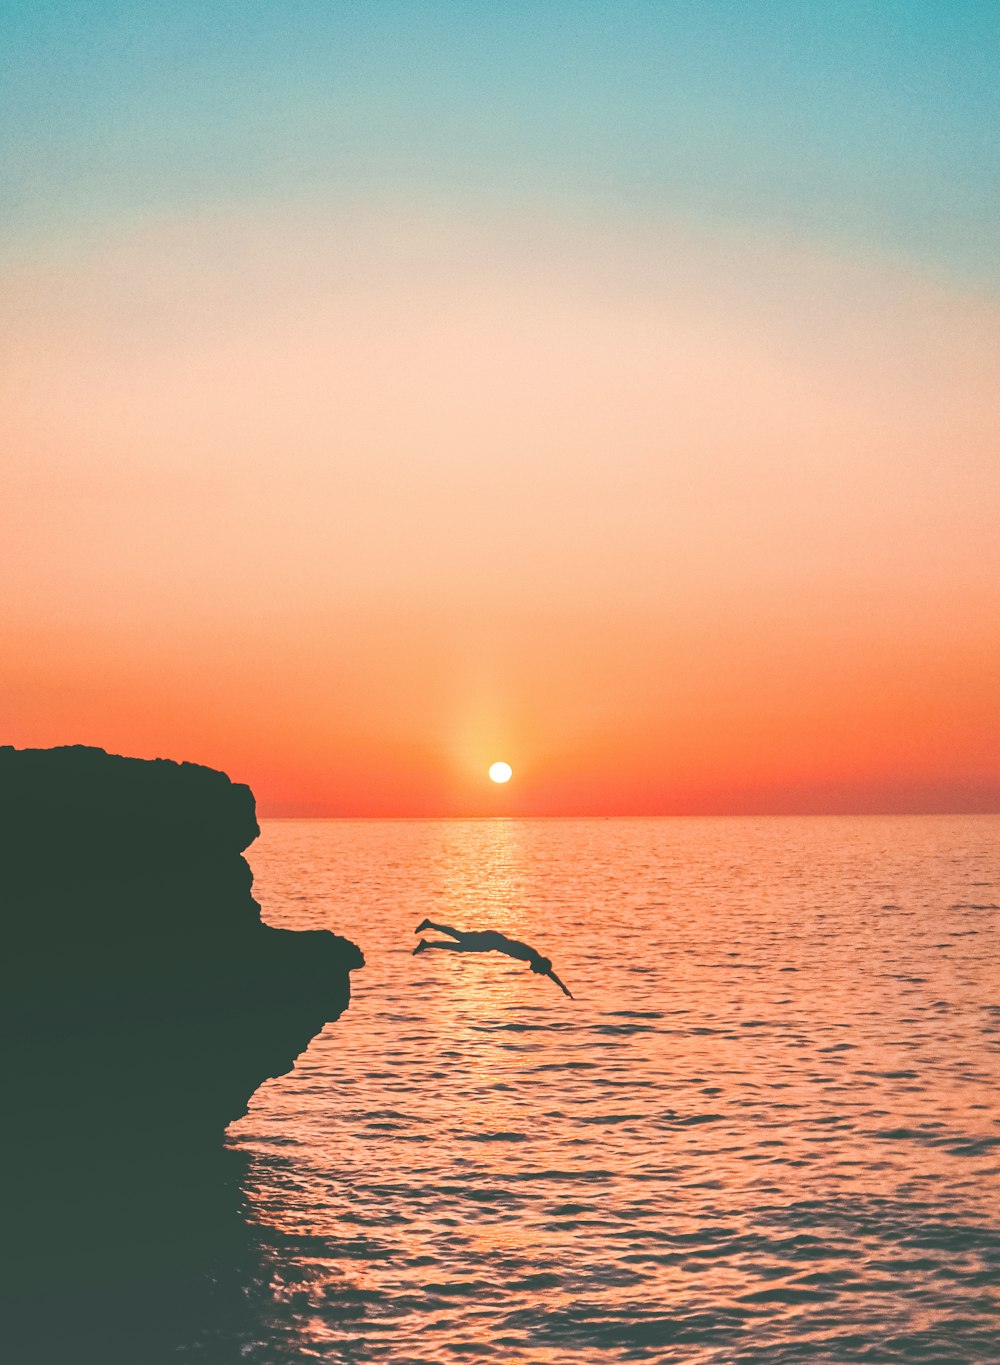 Un uccello che vola sopra uno specchio d'acqua al tramonto